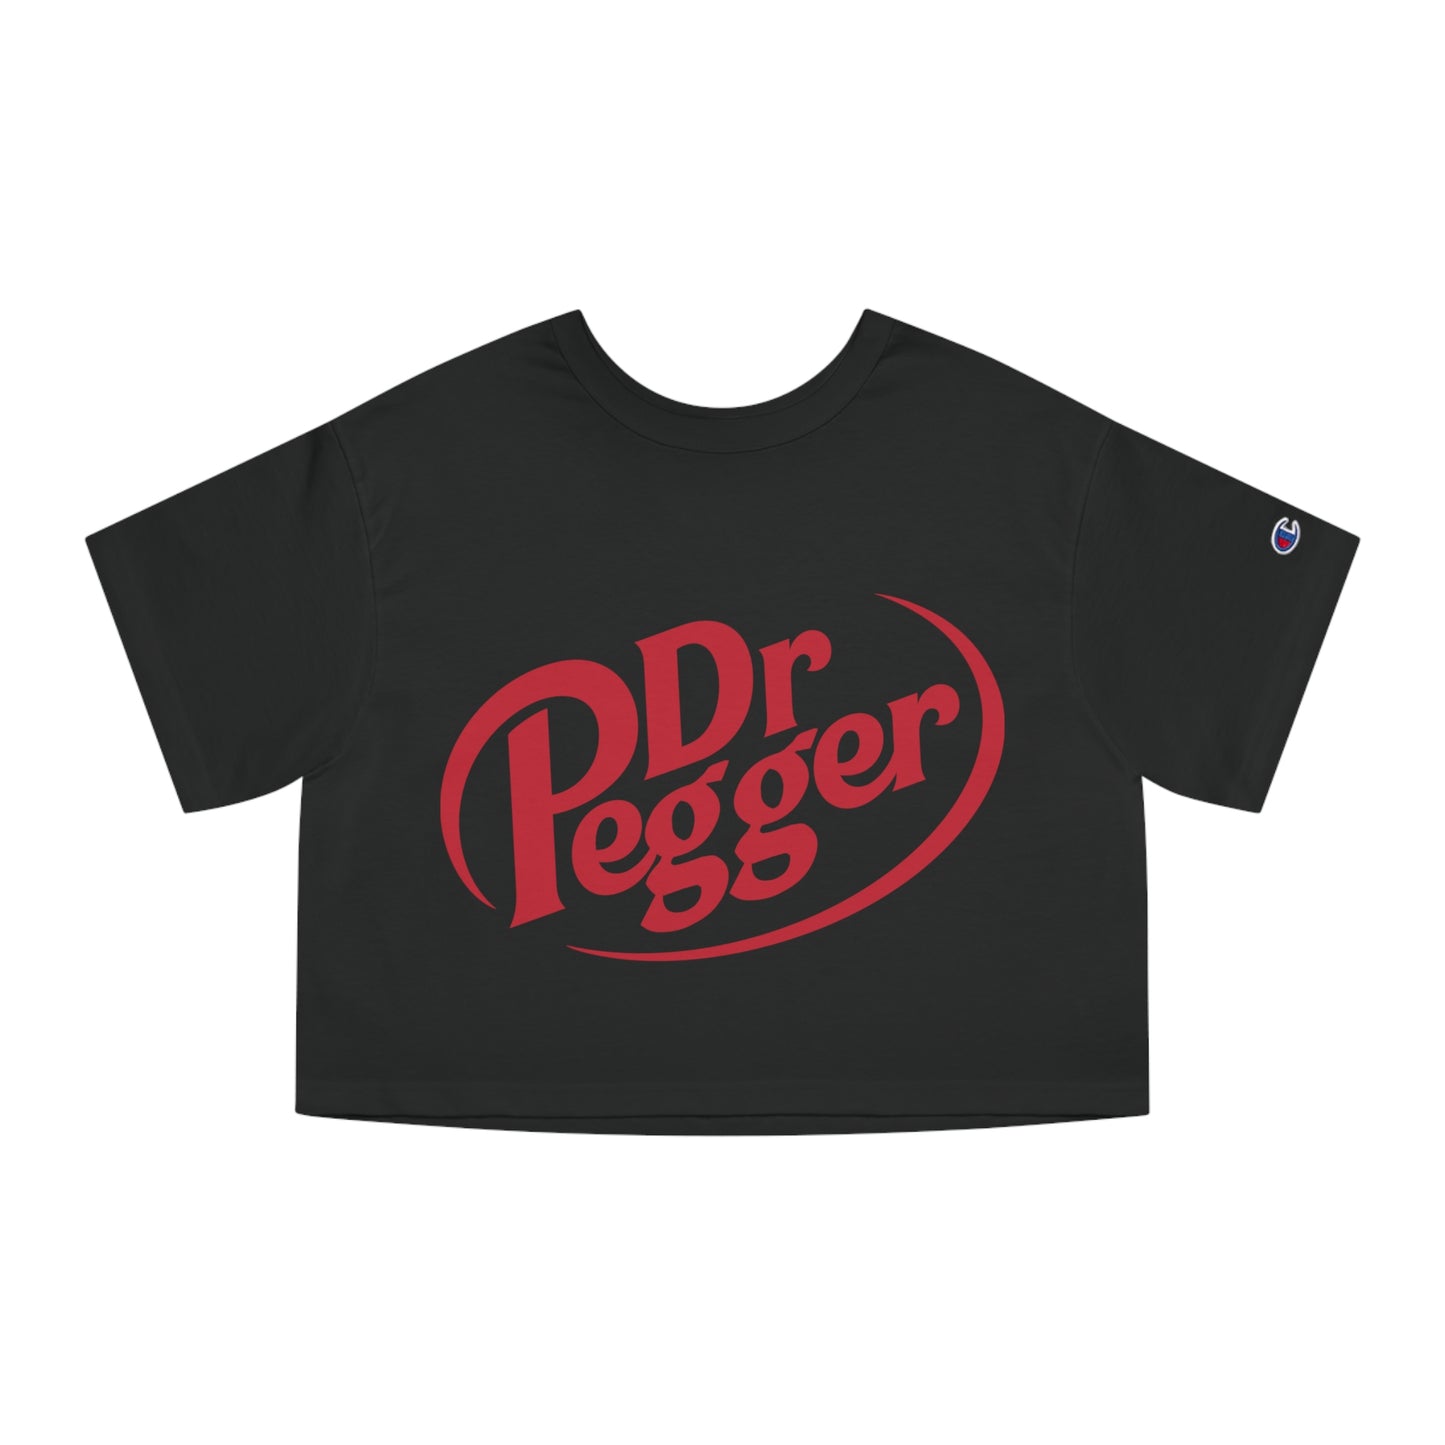 Dr Pegger Crop Top